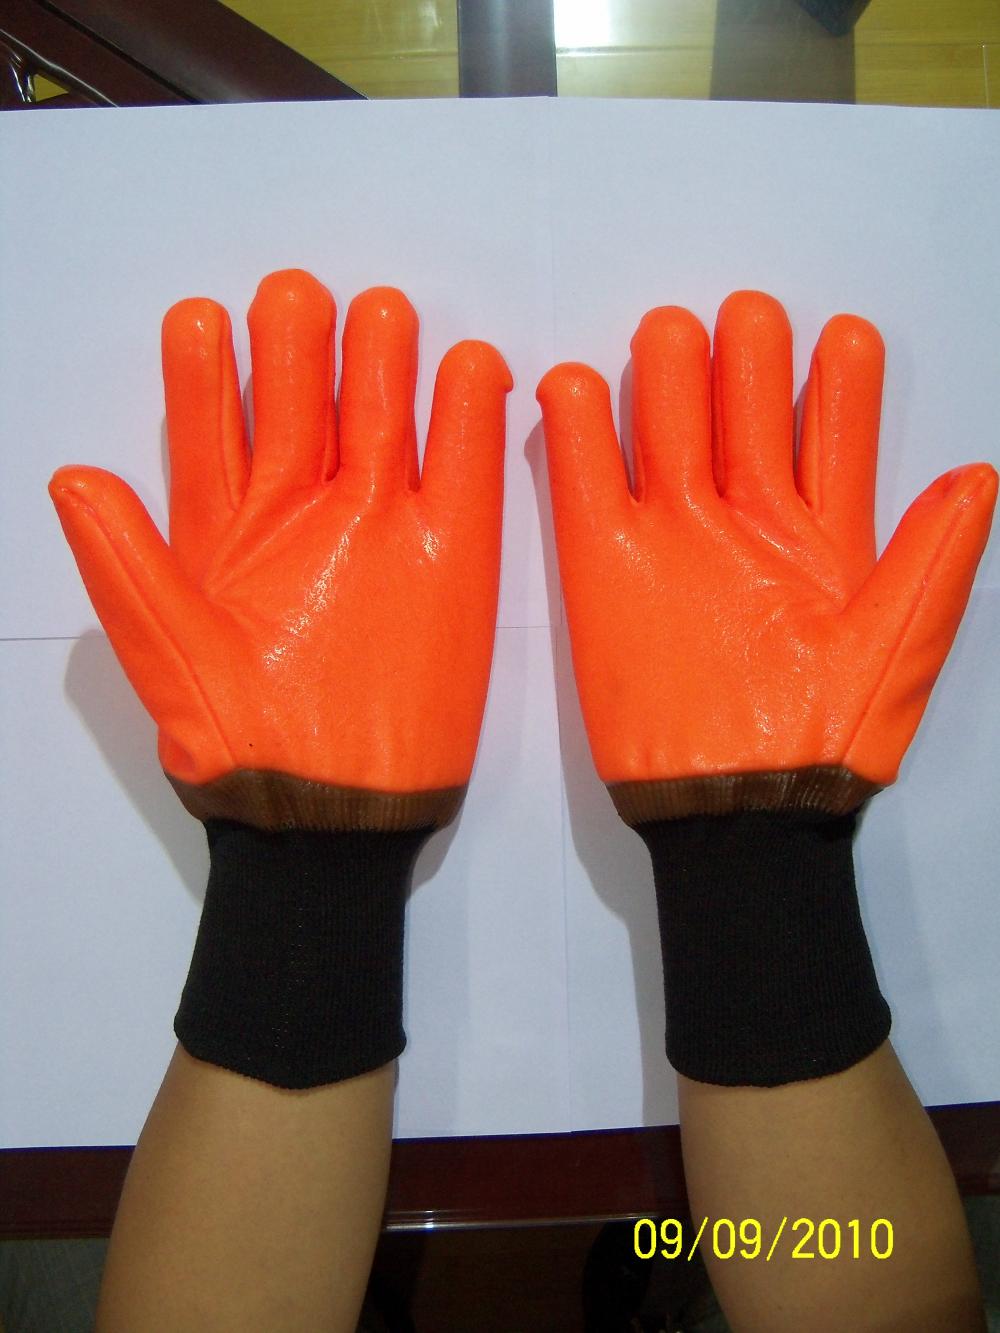 Guanti invernali rivestiti in PVC arancione